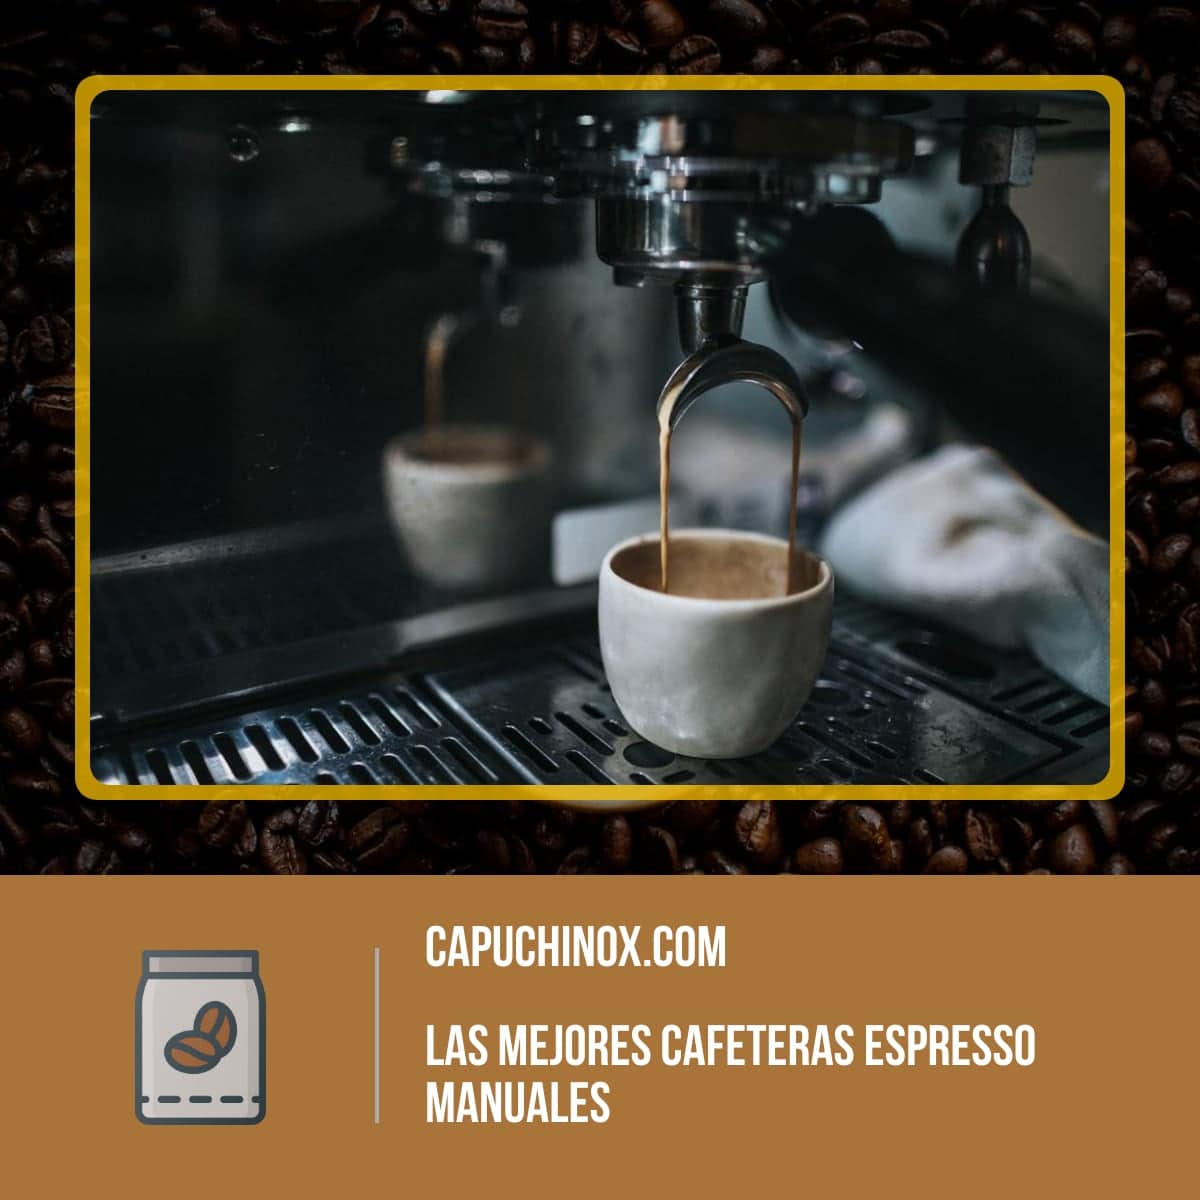 3 consejos útiles para cuidar tu máquina de espresso - Primero Café